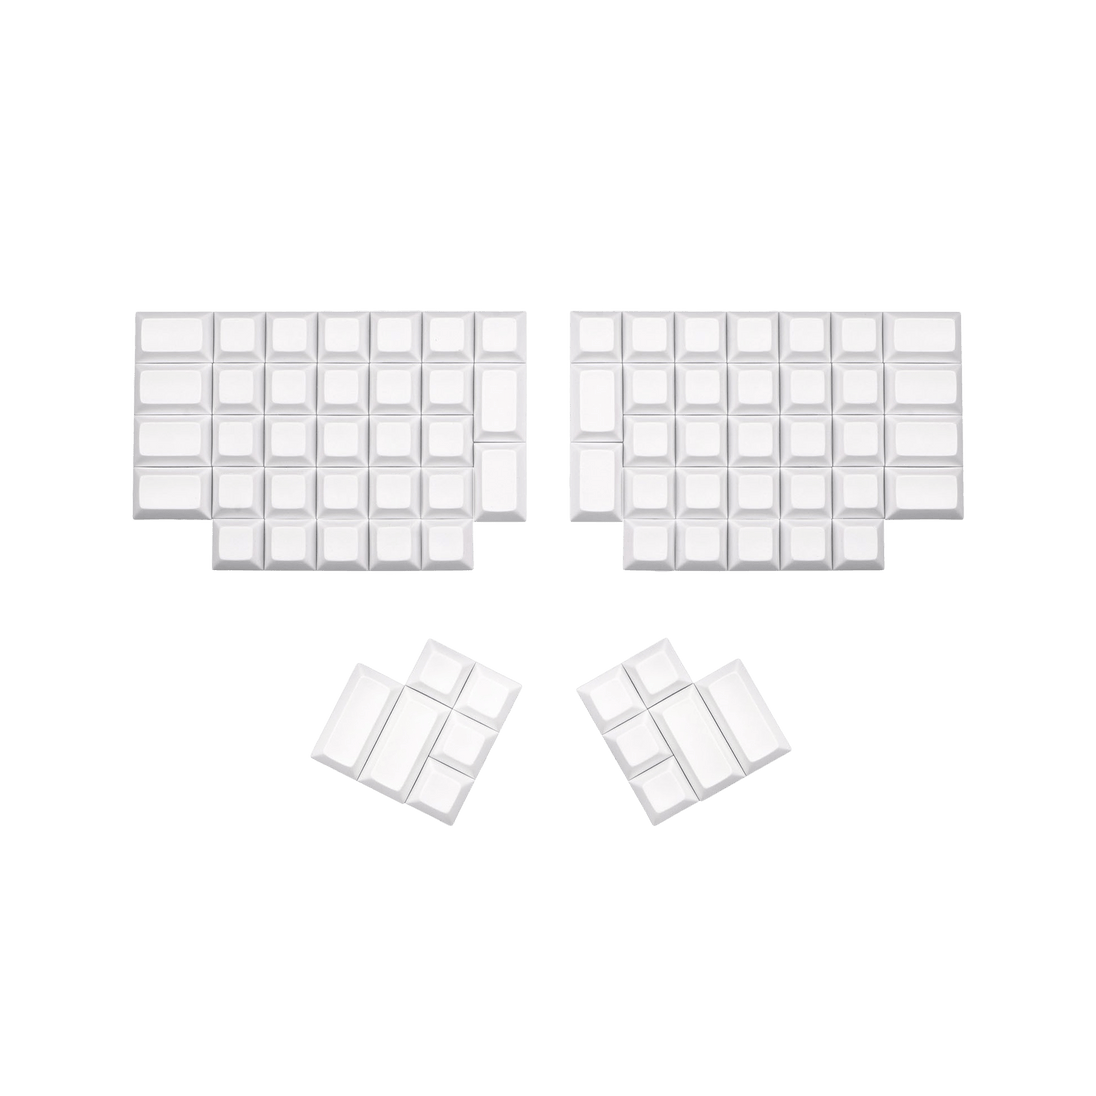 Split DSA Keycaps White